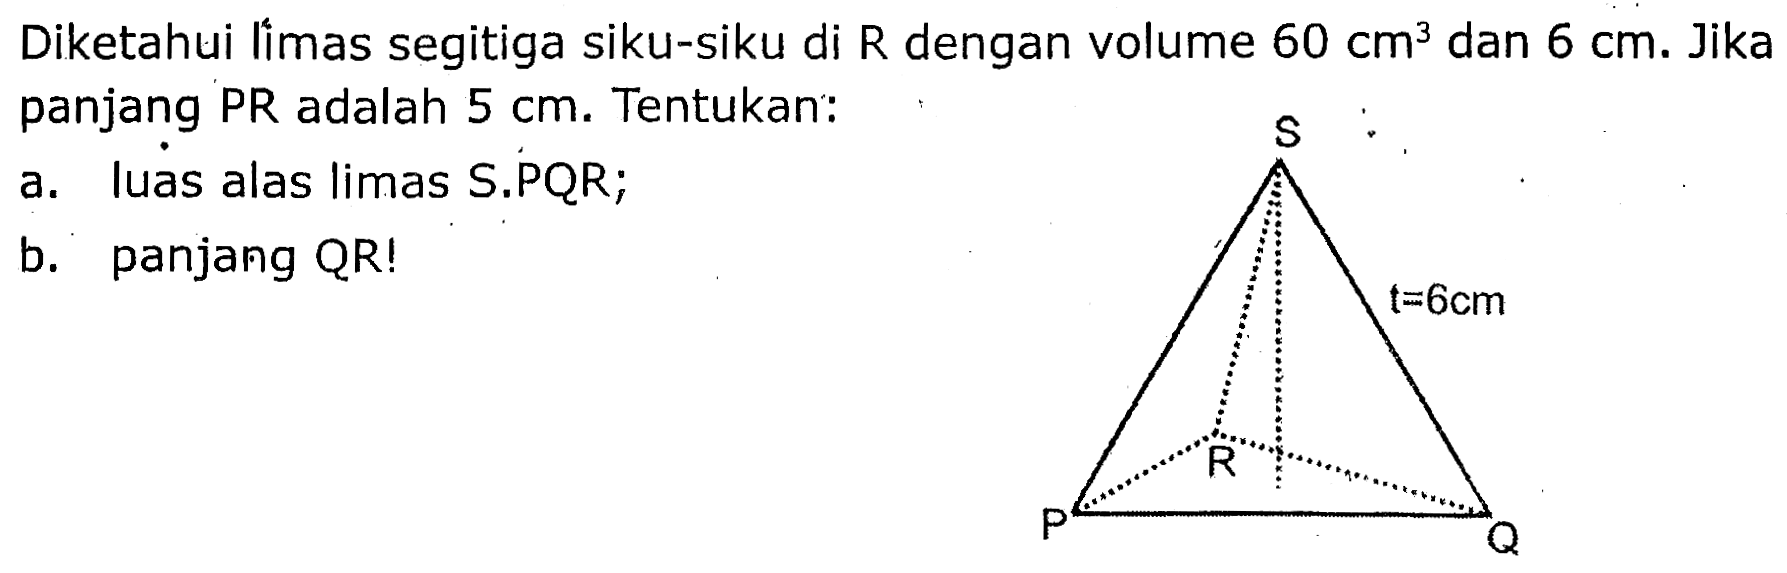 Diketahui limas segitiga siku-siku di R dengan volume  60 cm^(3)  dan  6 cm . Jika panjang PR adalah  5 cm . Tentukan:
a. luas alas limas S.PQR;
b. panjang QR!